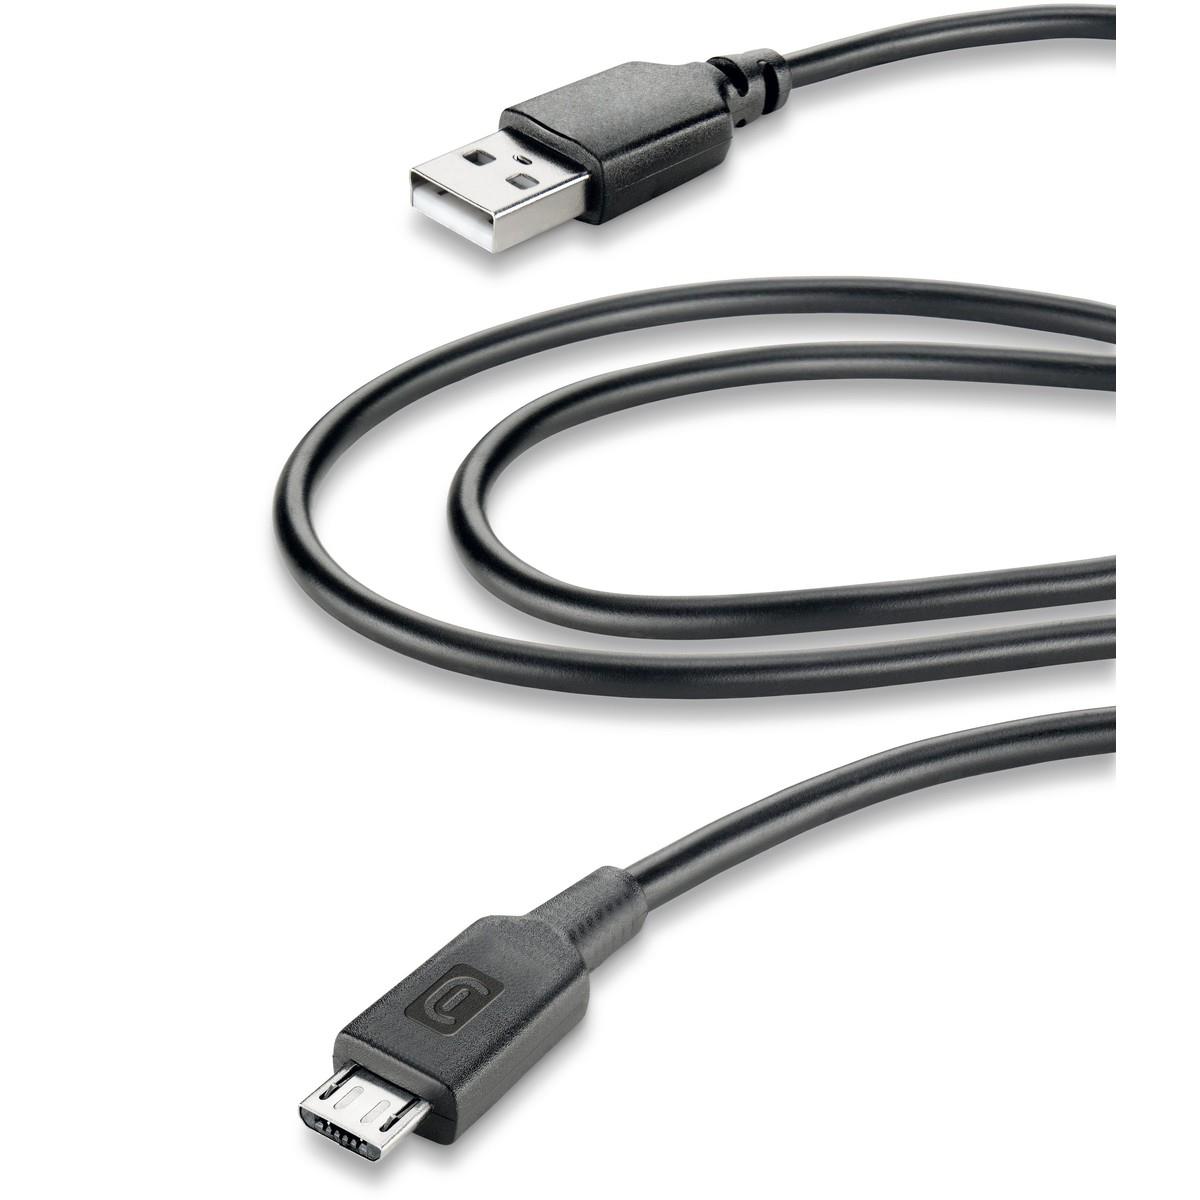 Lade- und Datenkabel 200cm USB Type-A auf Micro-USB